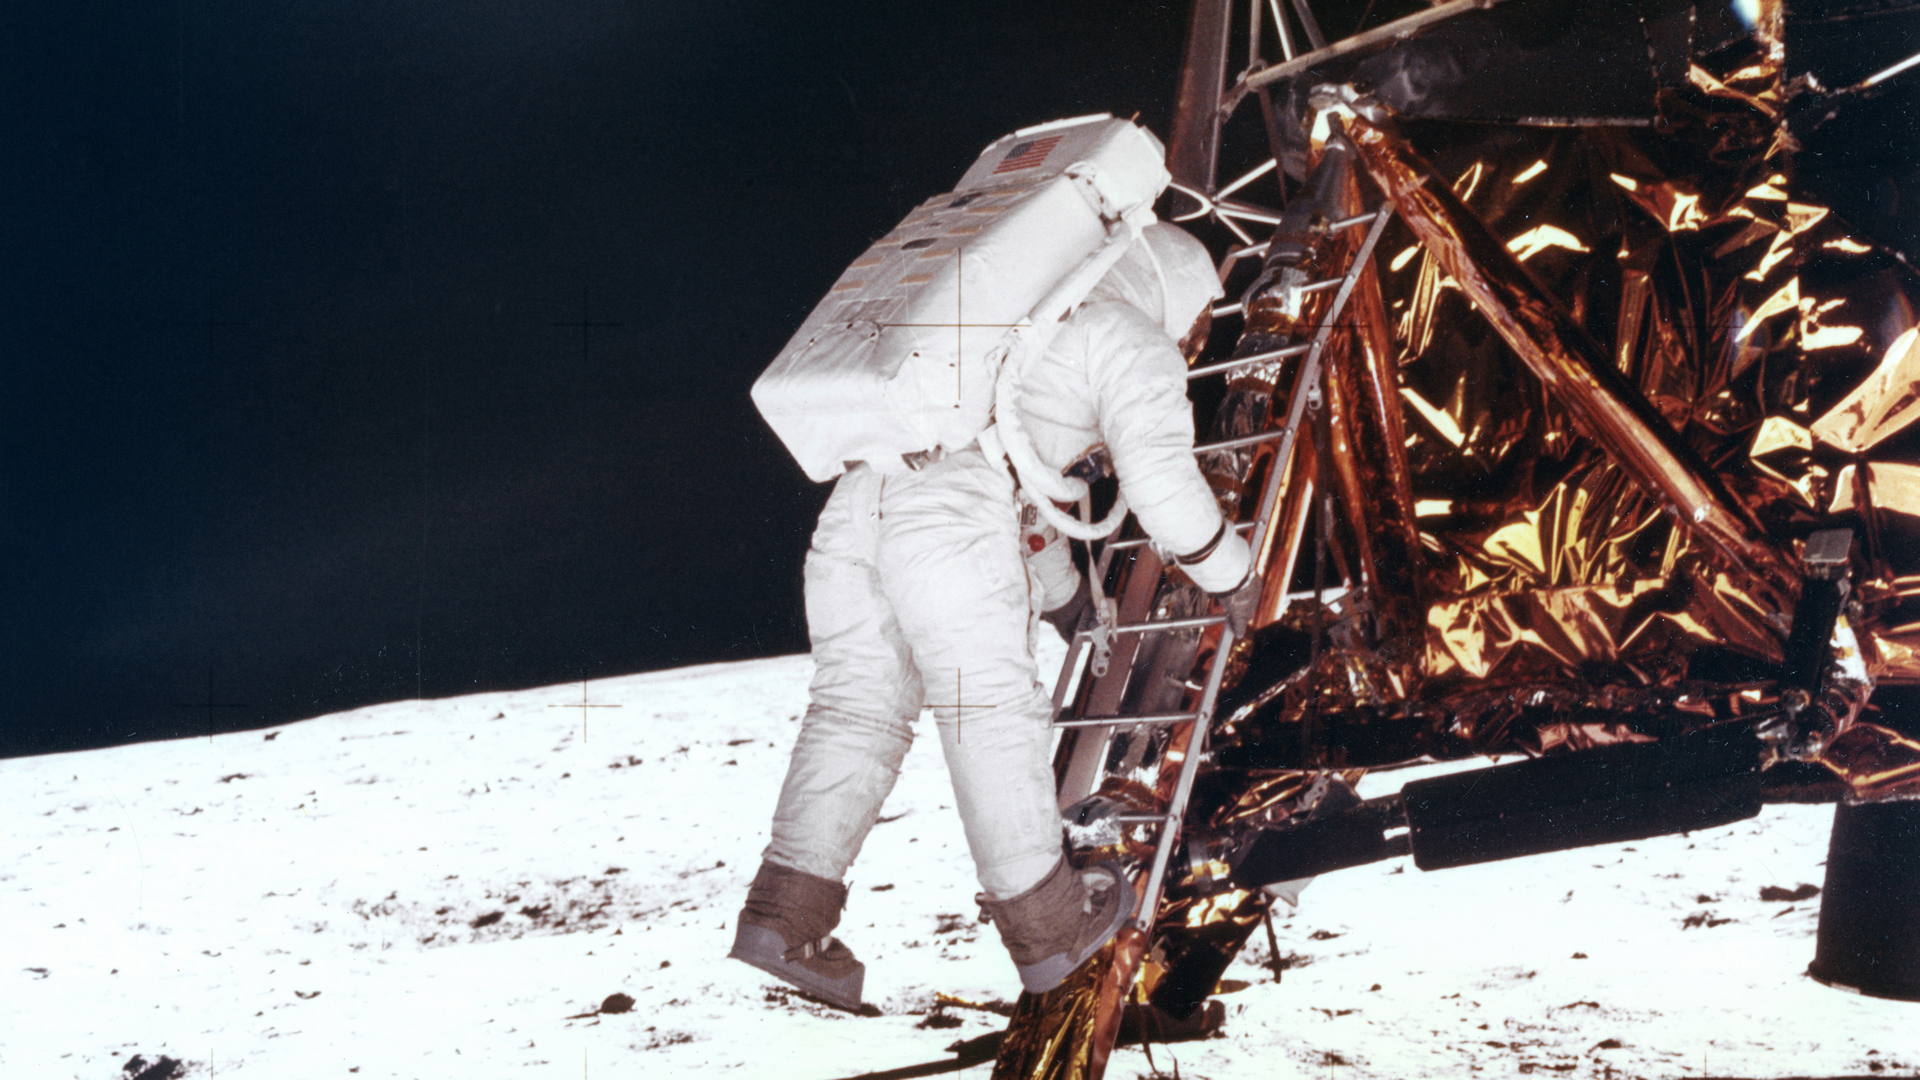 lunar landing 1969